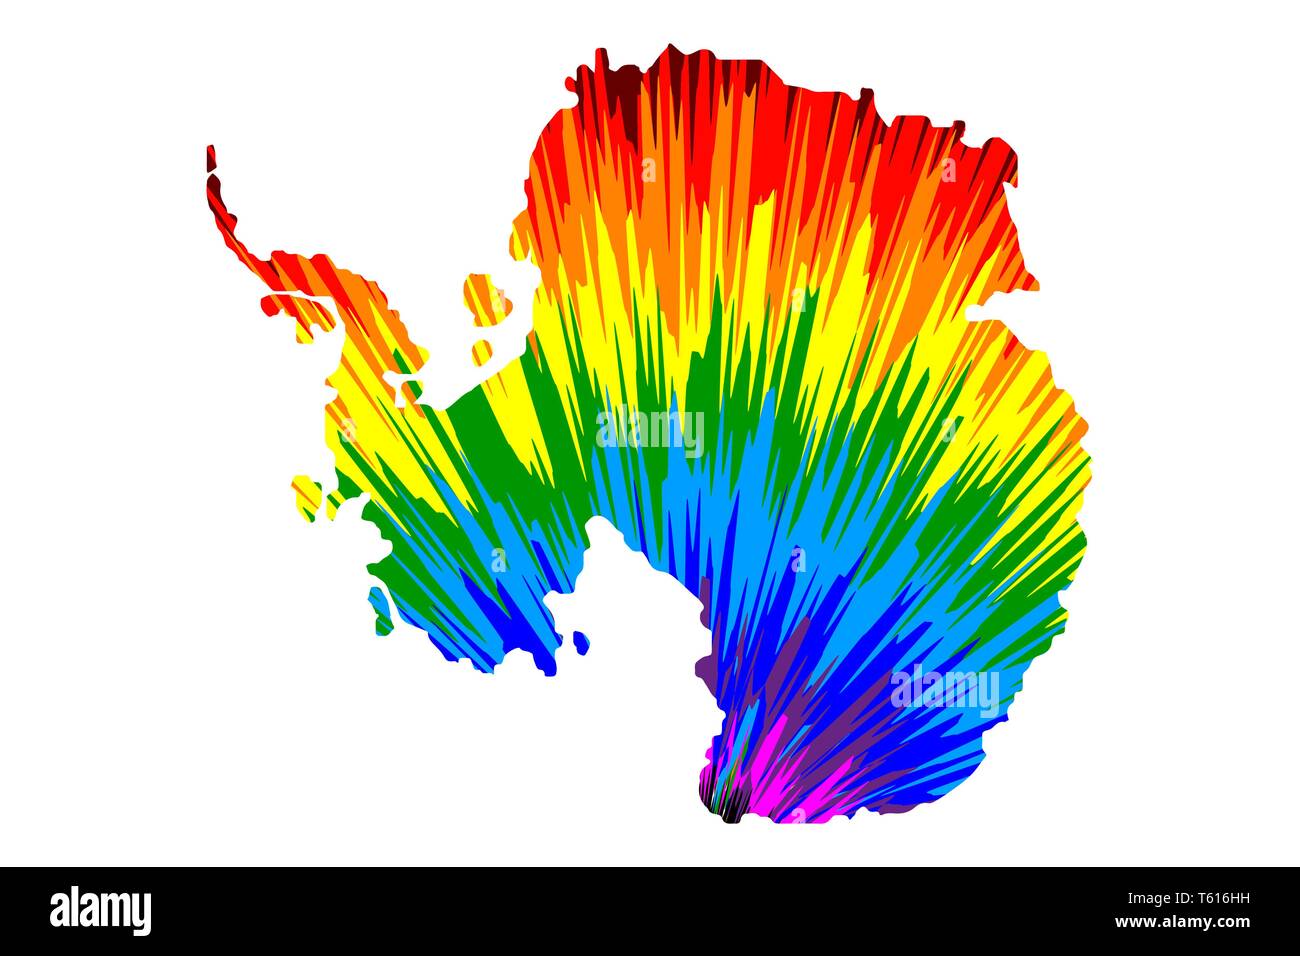 Continent Antarctique - carte est conçu rainbow abstract colorful pattern, Pôle Sud carte de color explosion, Illustration de Vecteur